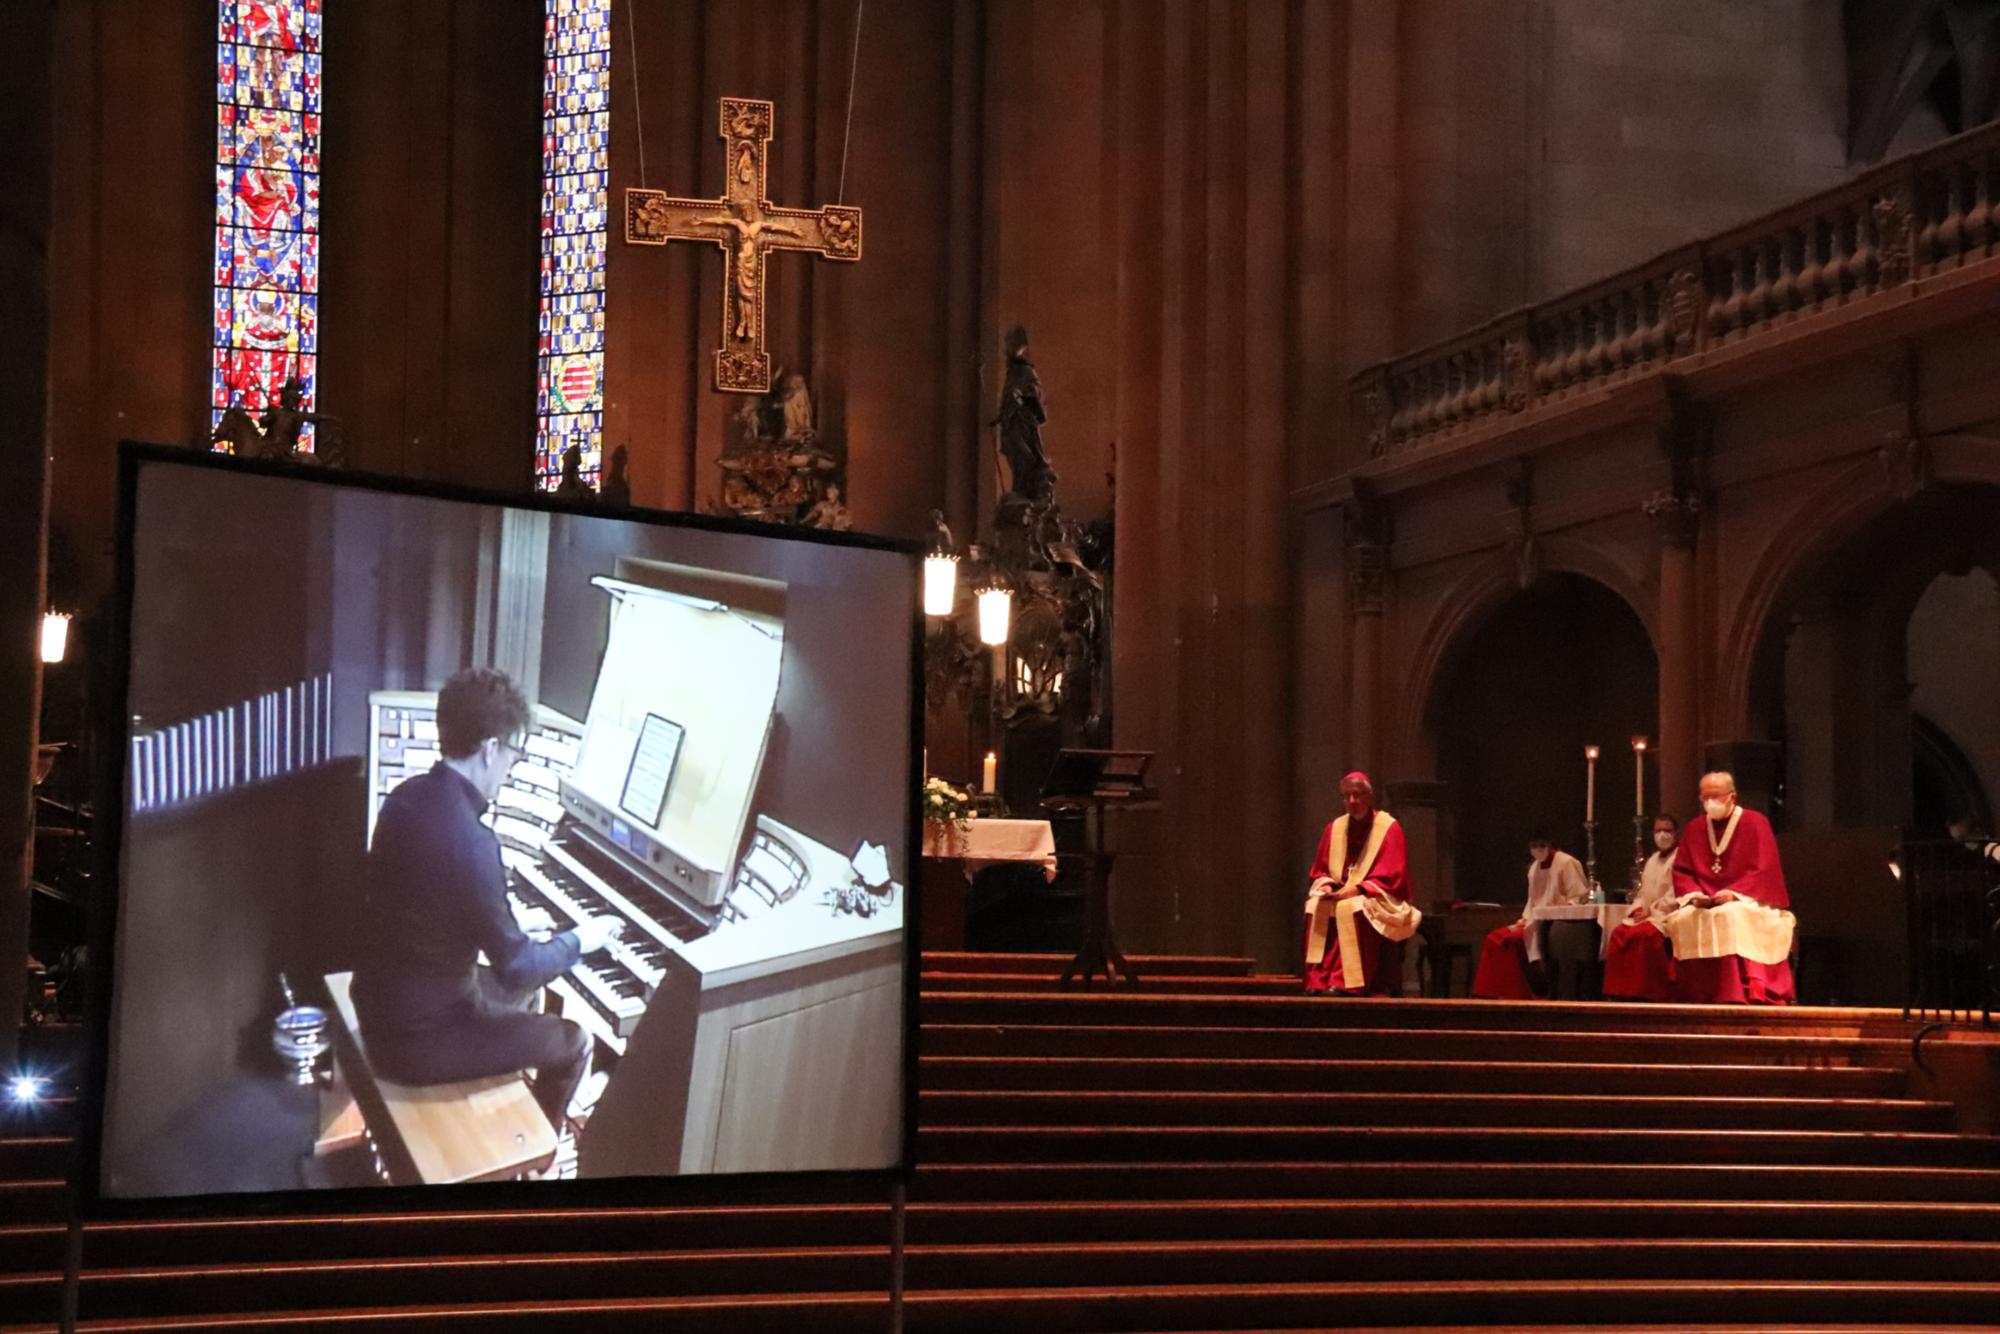 Das Orgelspiel von Domorganist Professor Daniel Beckmann war auf einer Leinwand zu sehen. (c) Bistum Mainz/ Hoffmann